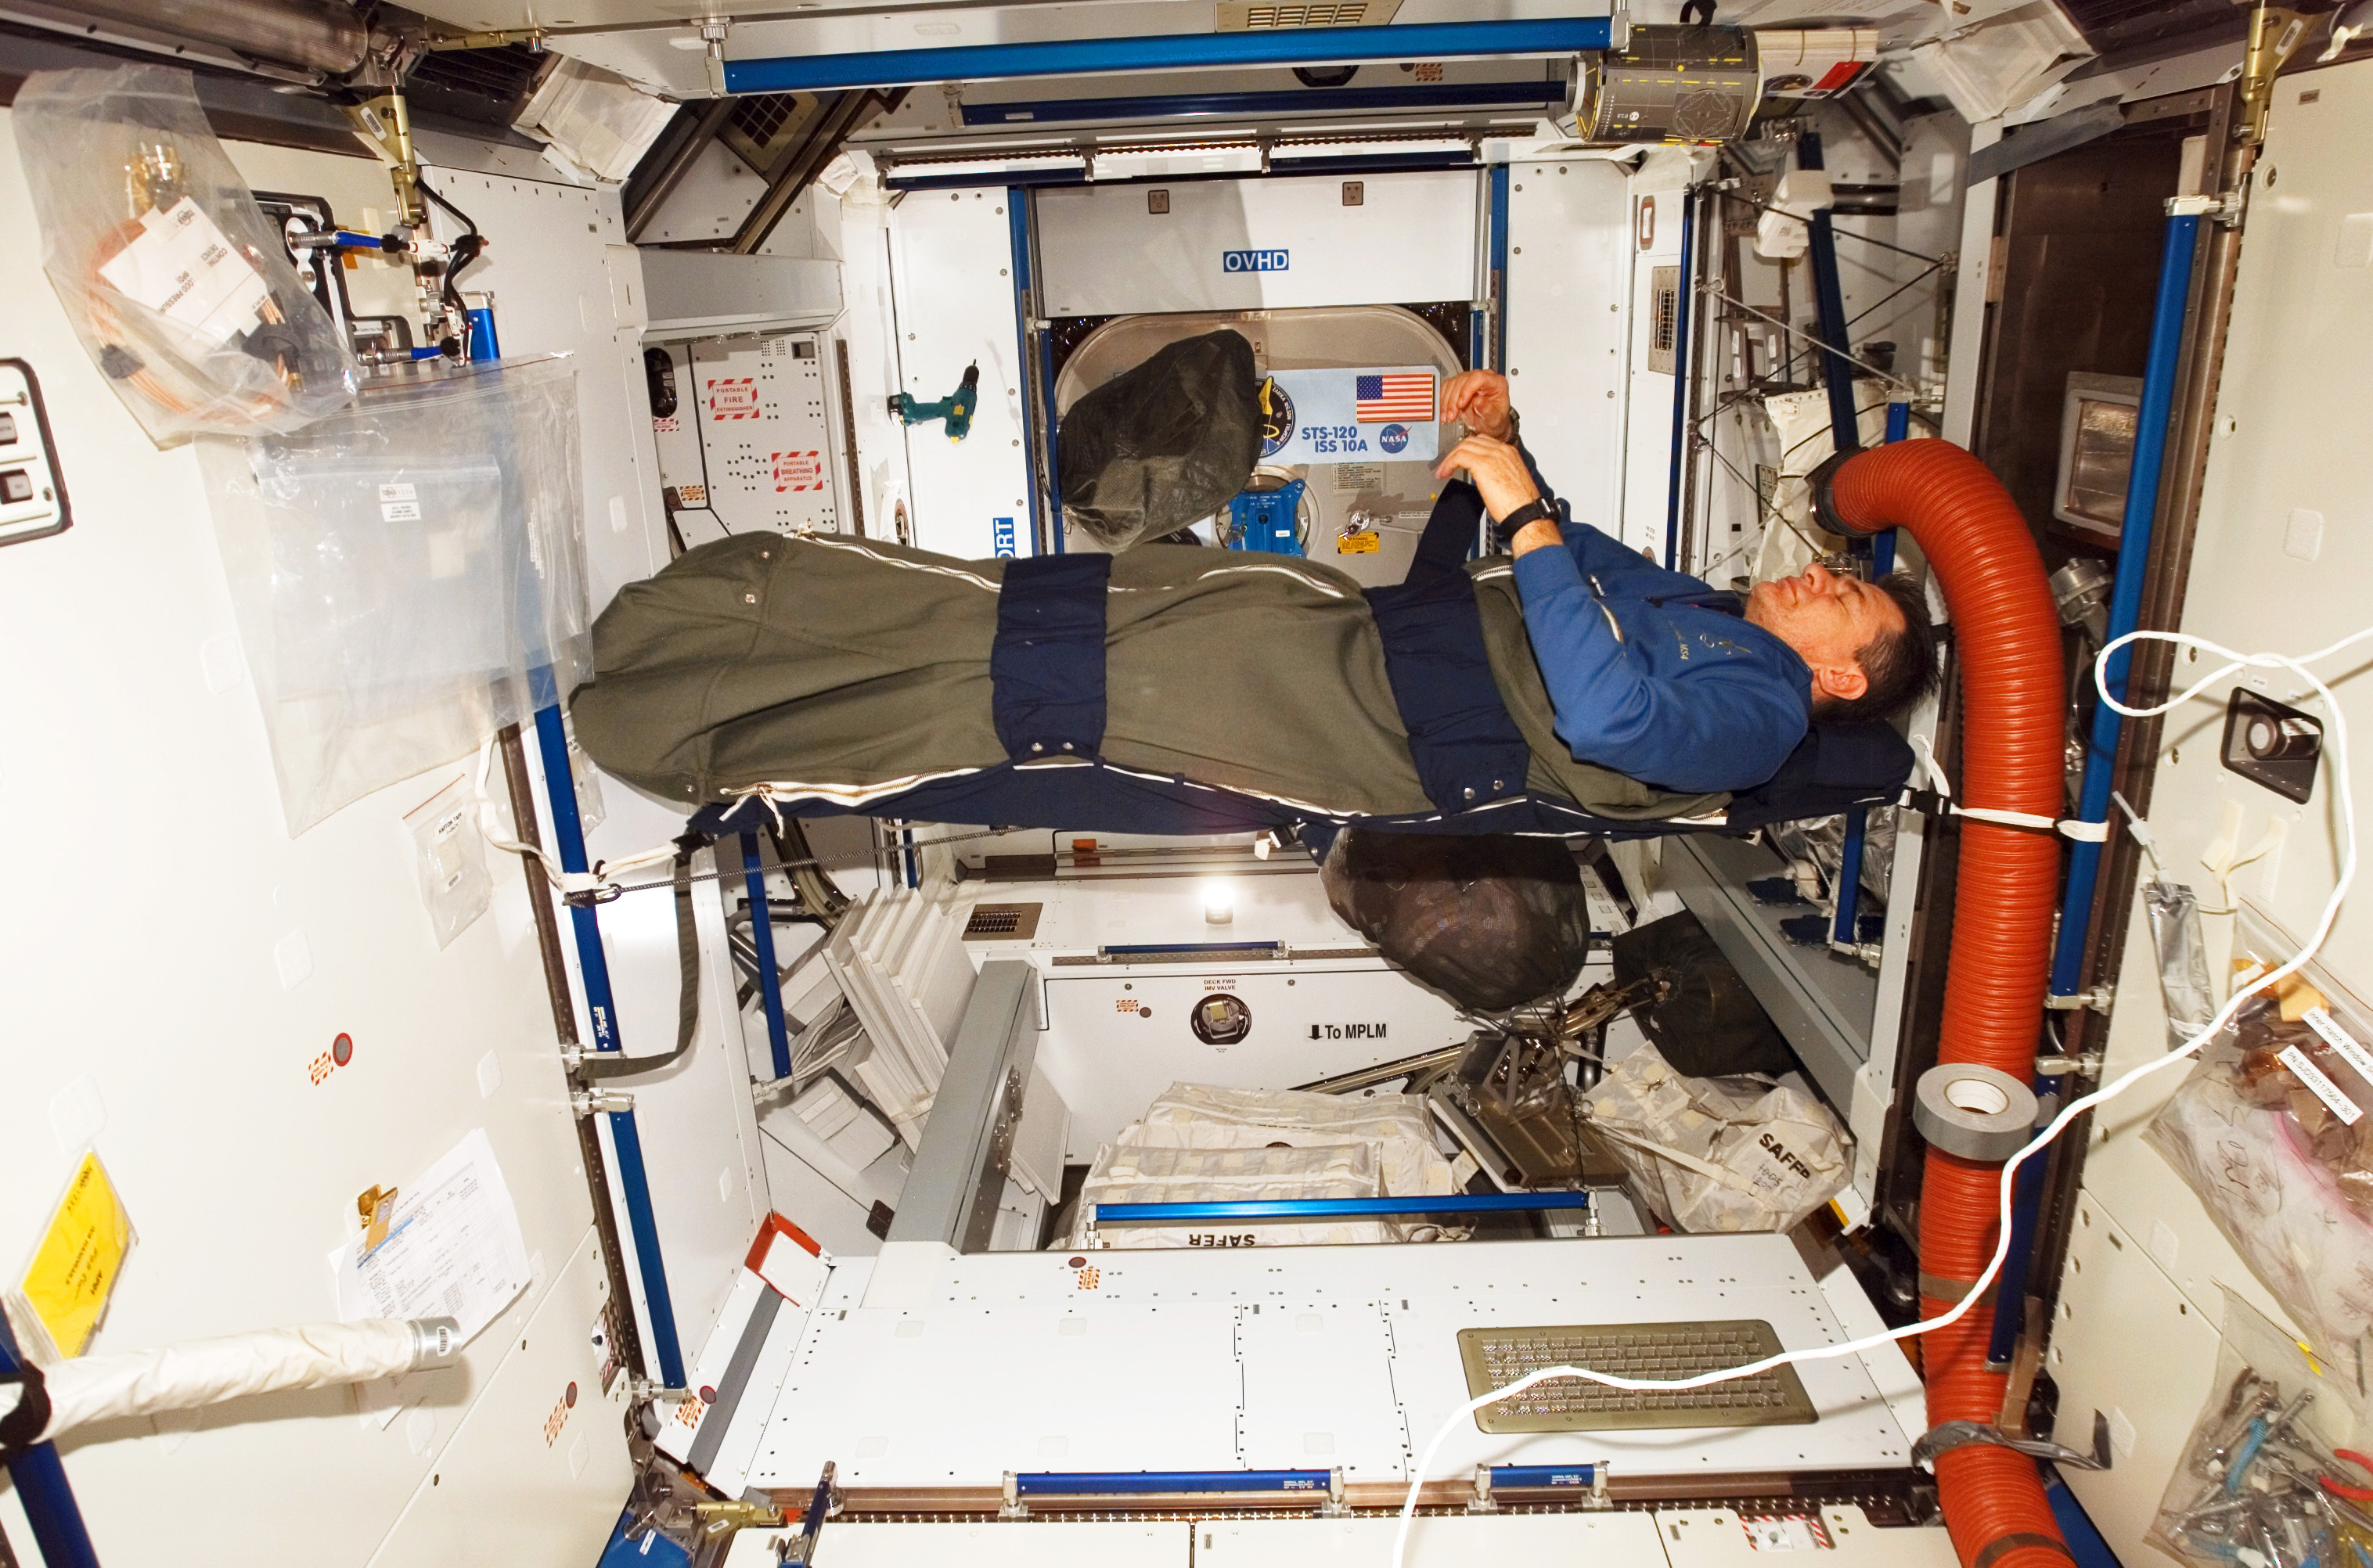 Esa Space For Kids Sleeping In Space